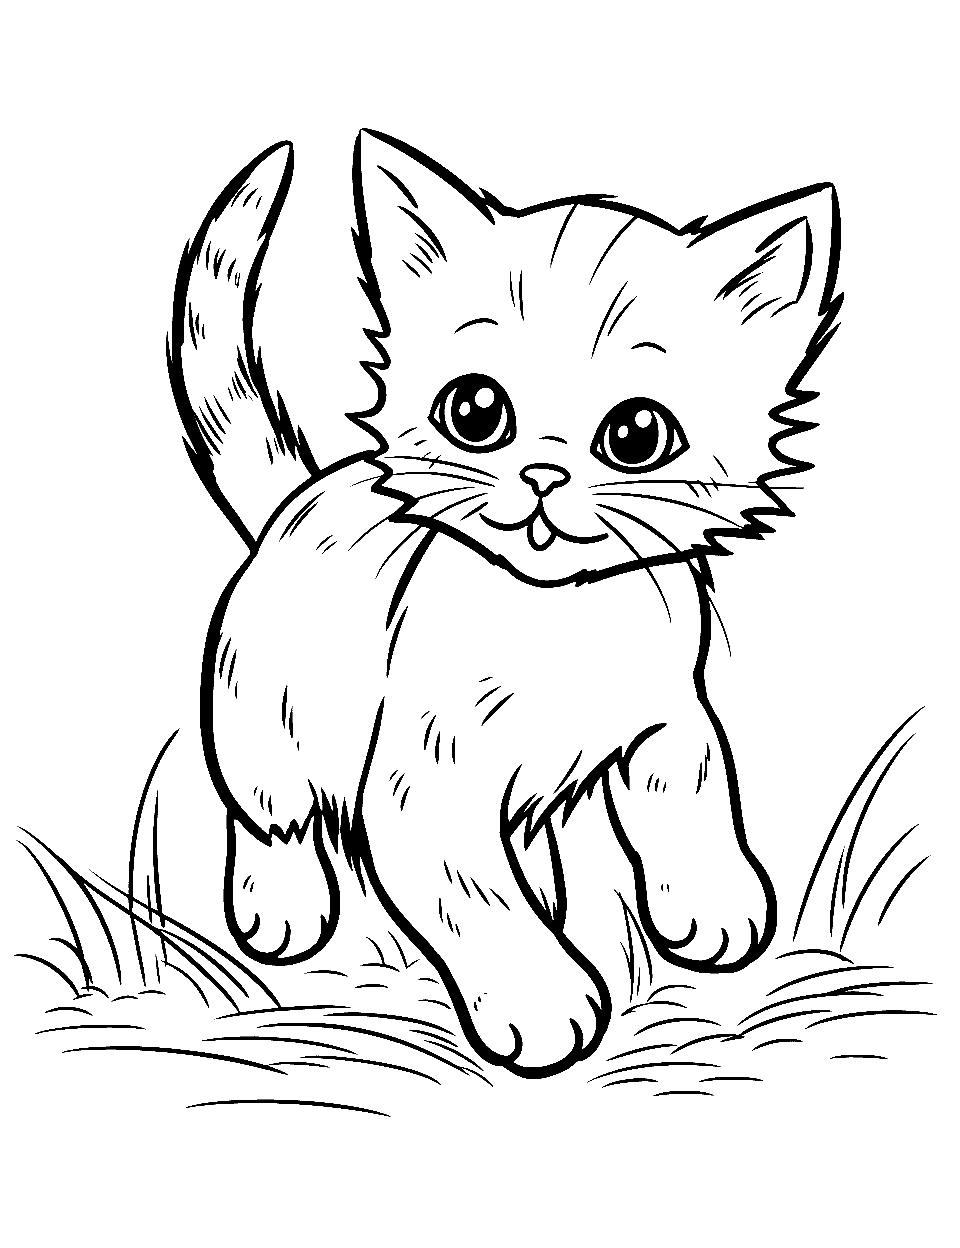 Baby Kitten's Adventure Kitten Coloring Page - A baby kitten having fun in an open field.